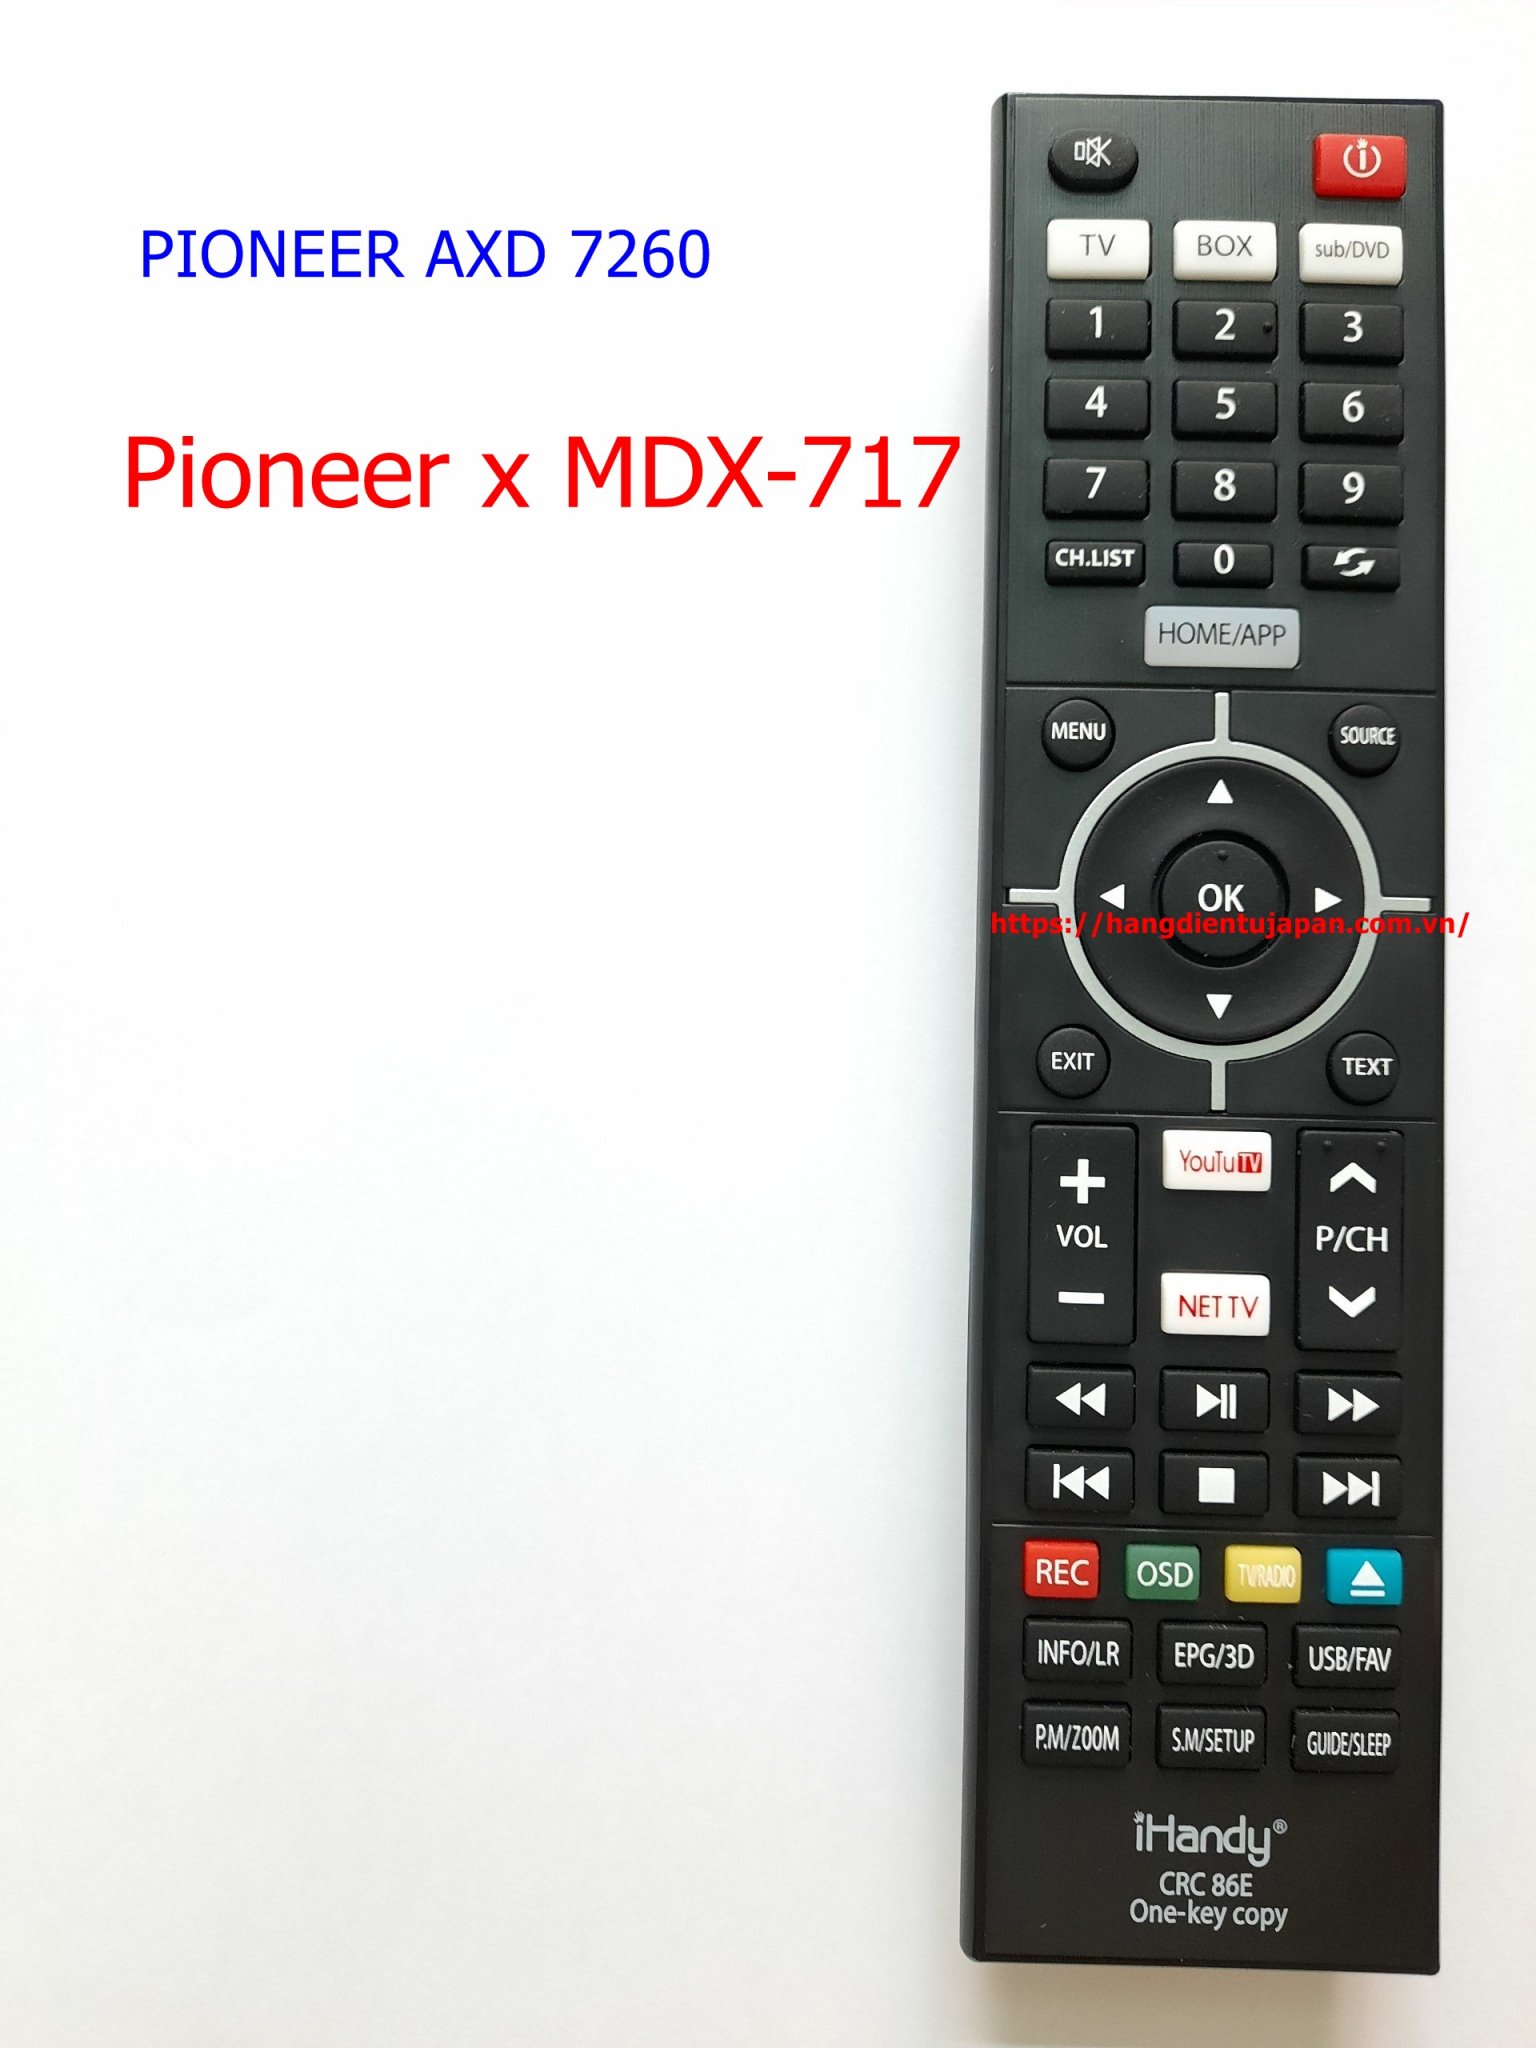 PIONEER AXD 7260.jpg